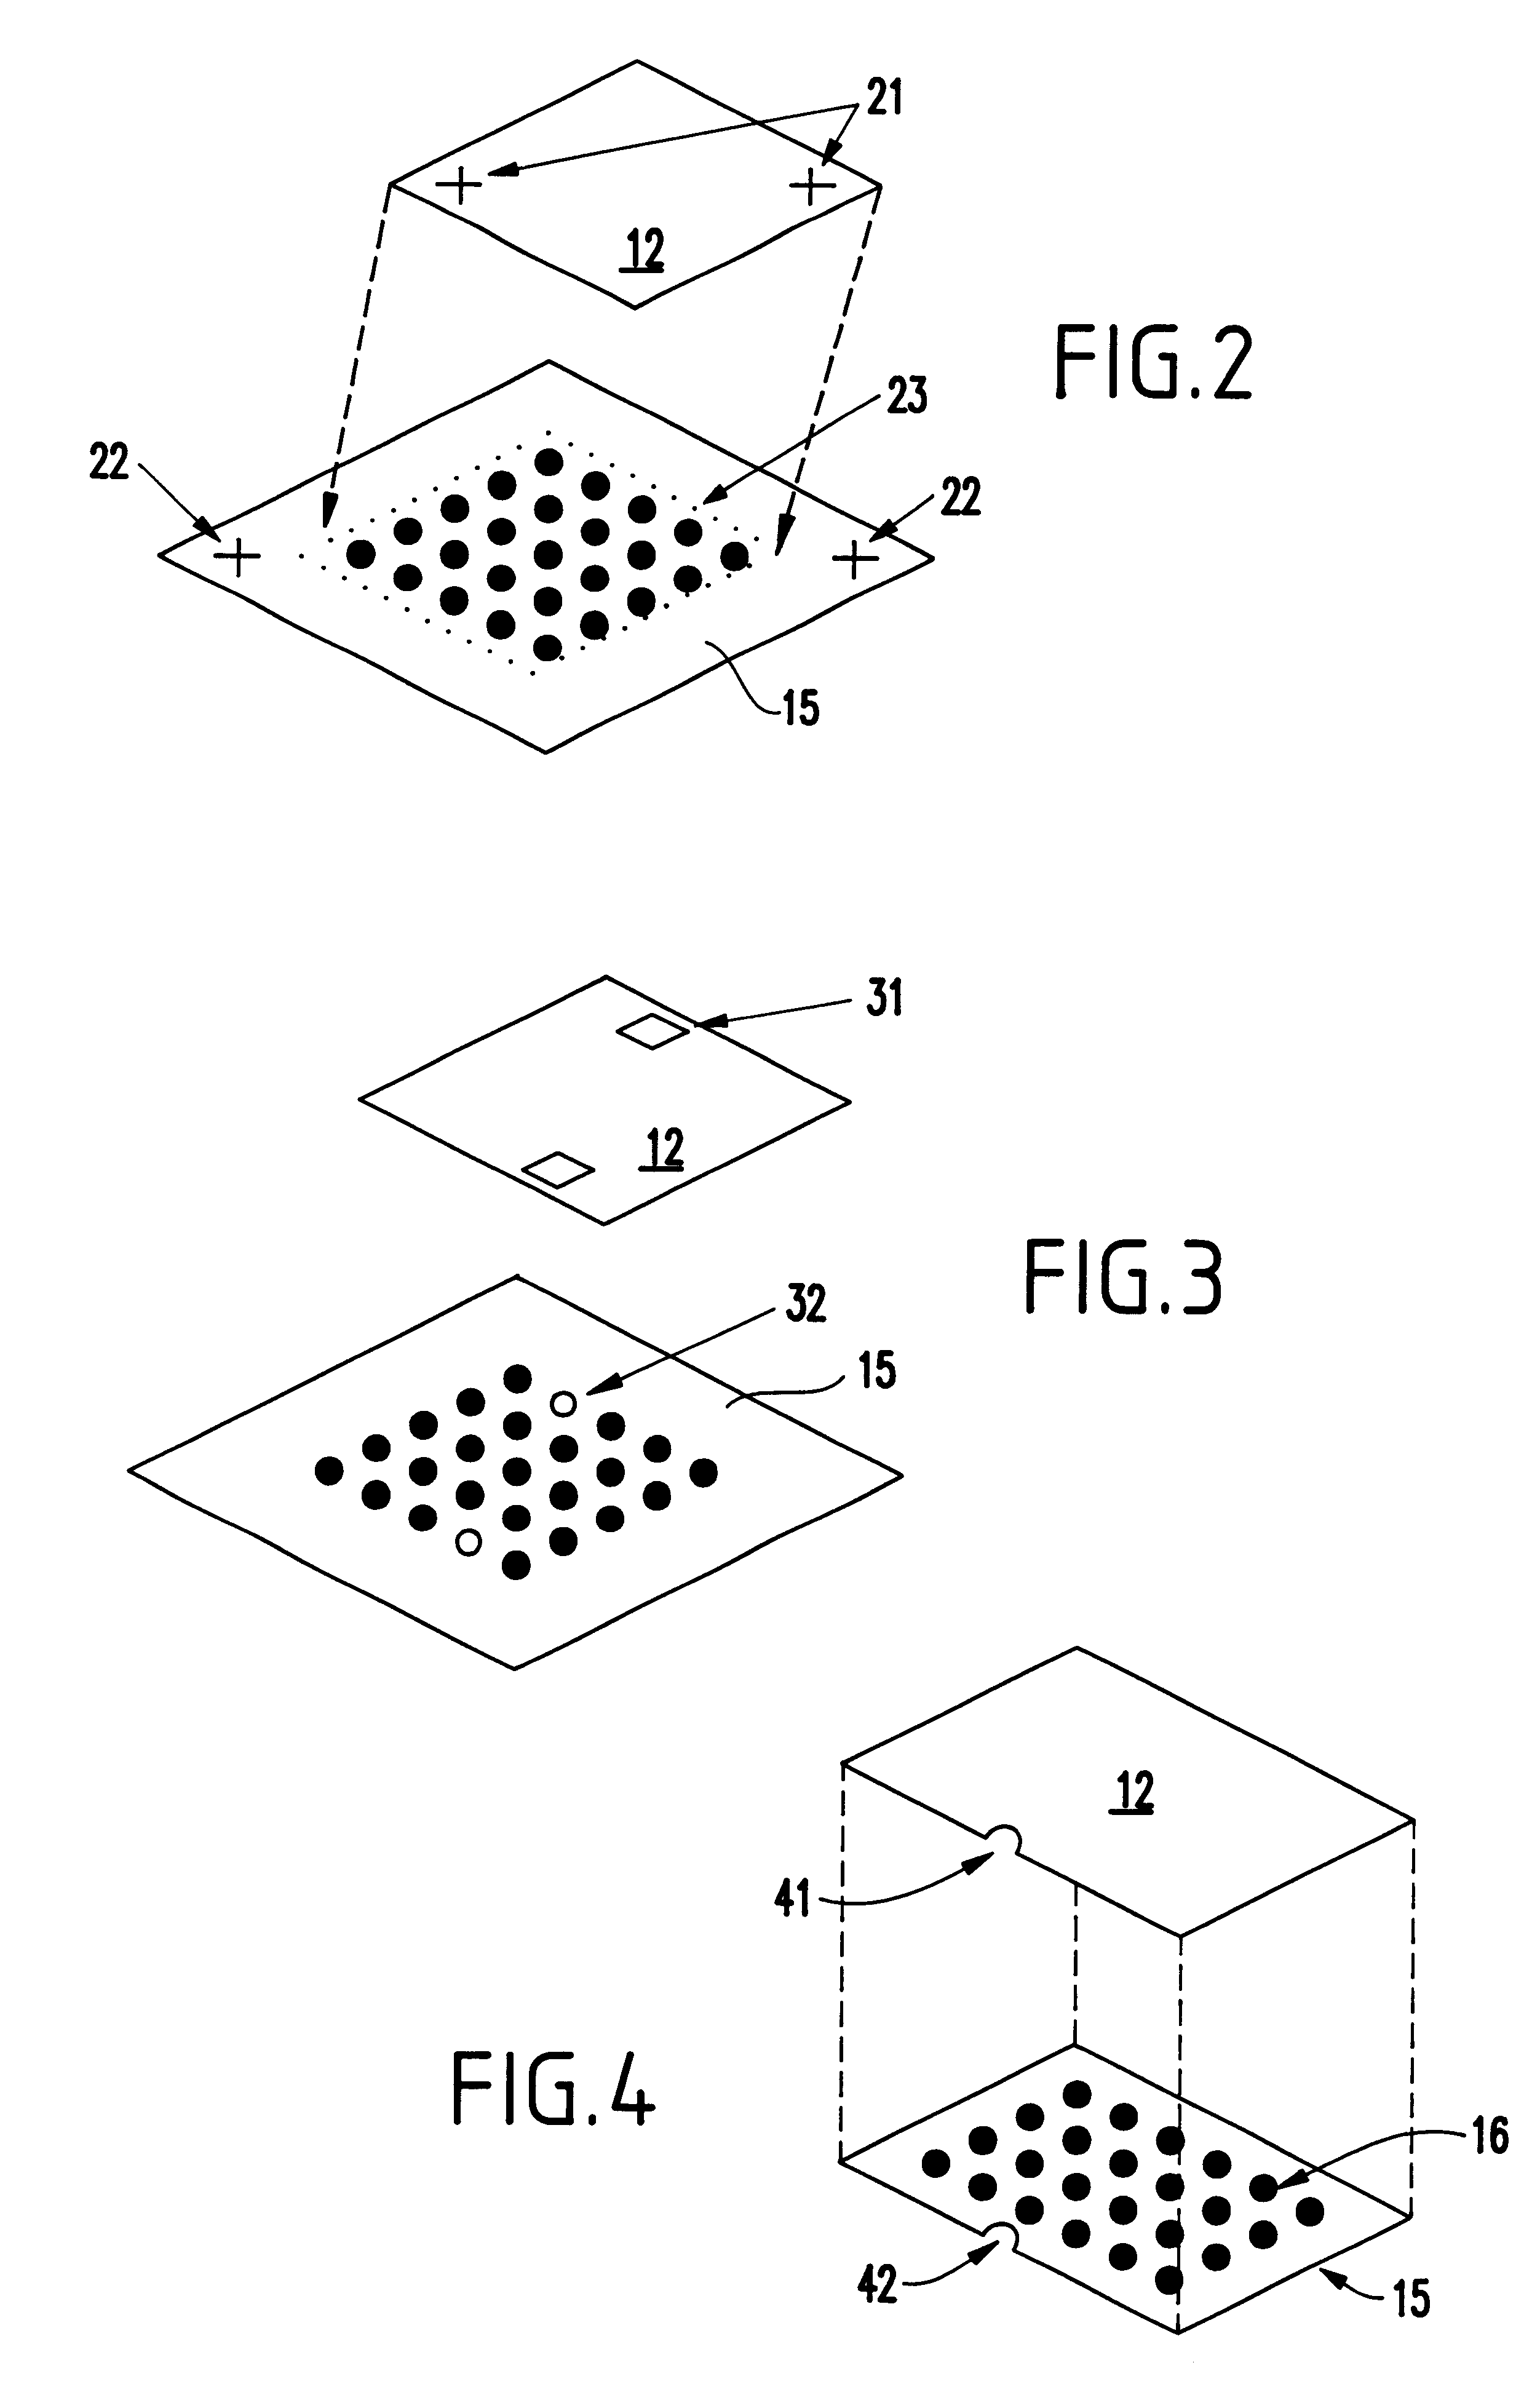 Optical sensing method to place flip chips